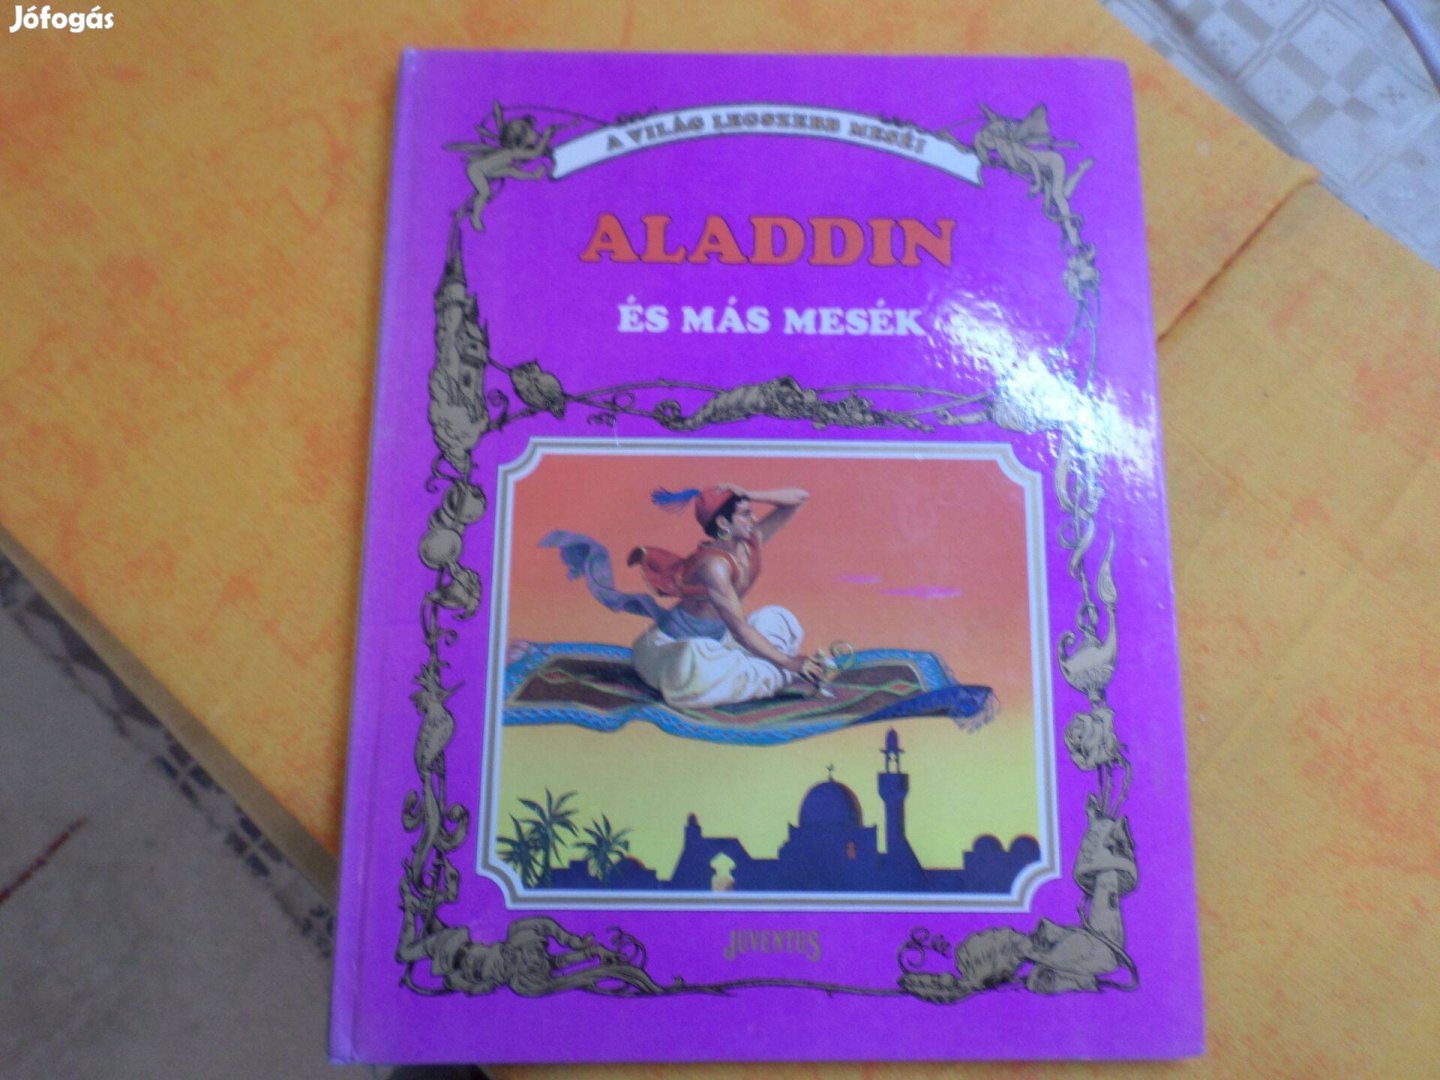 Ritka! A világ legszebb meséi Aladdin és más mesék. Gyermekkönyv